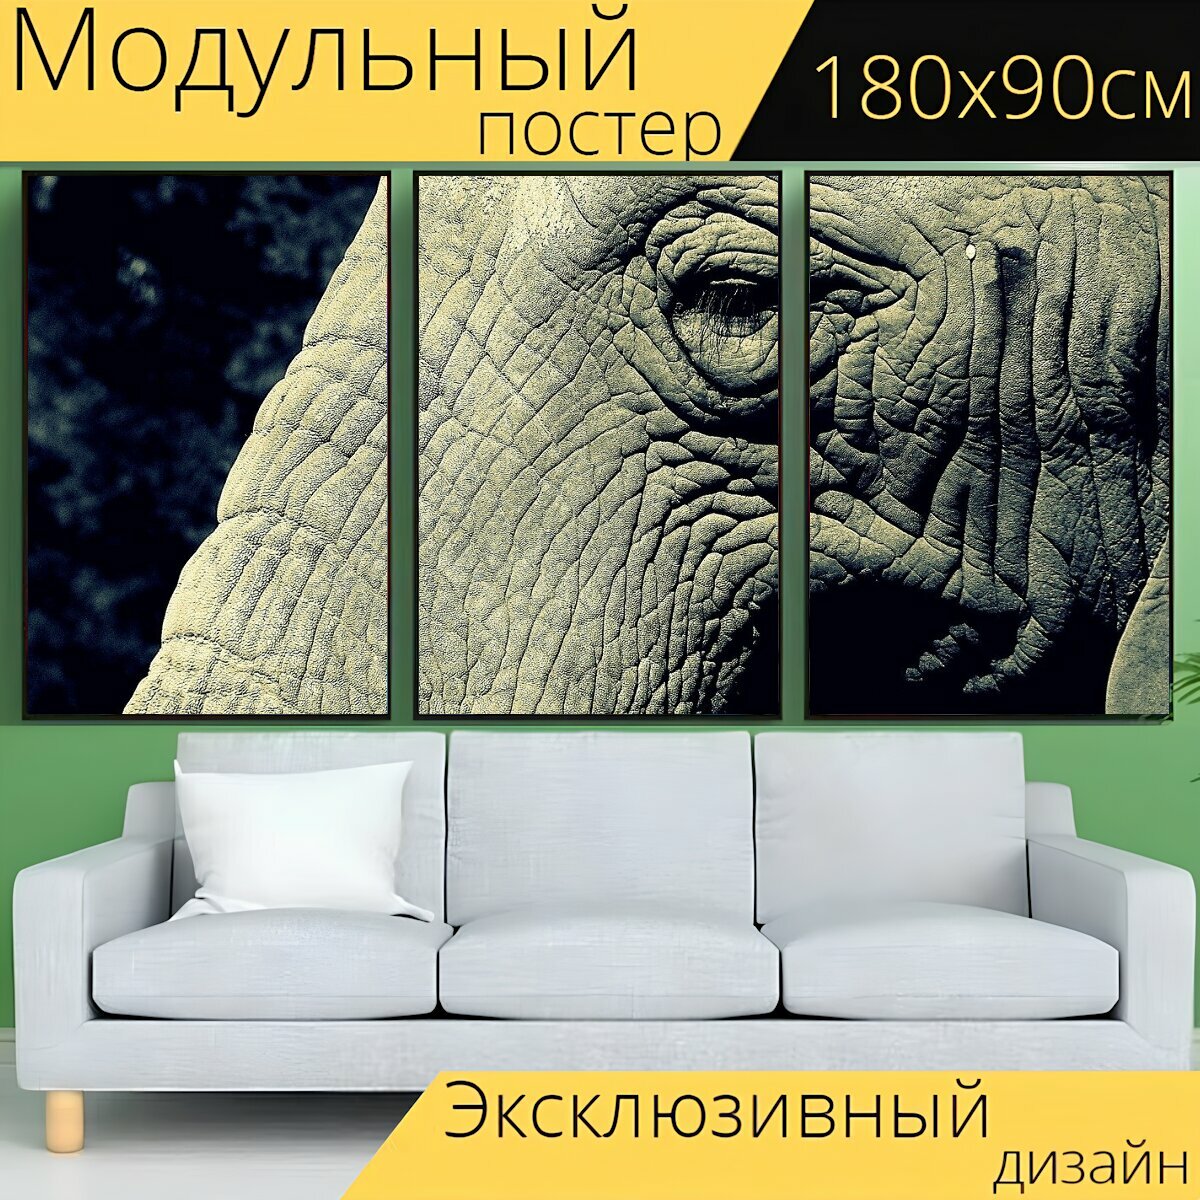 Модульный постер "Слон, ствол, глаз" 180 x 90 см. для интерьера